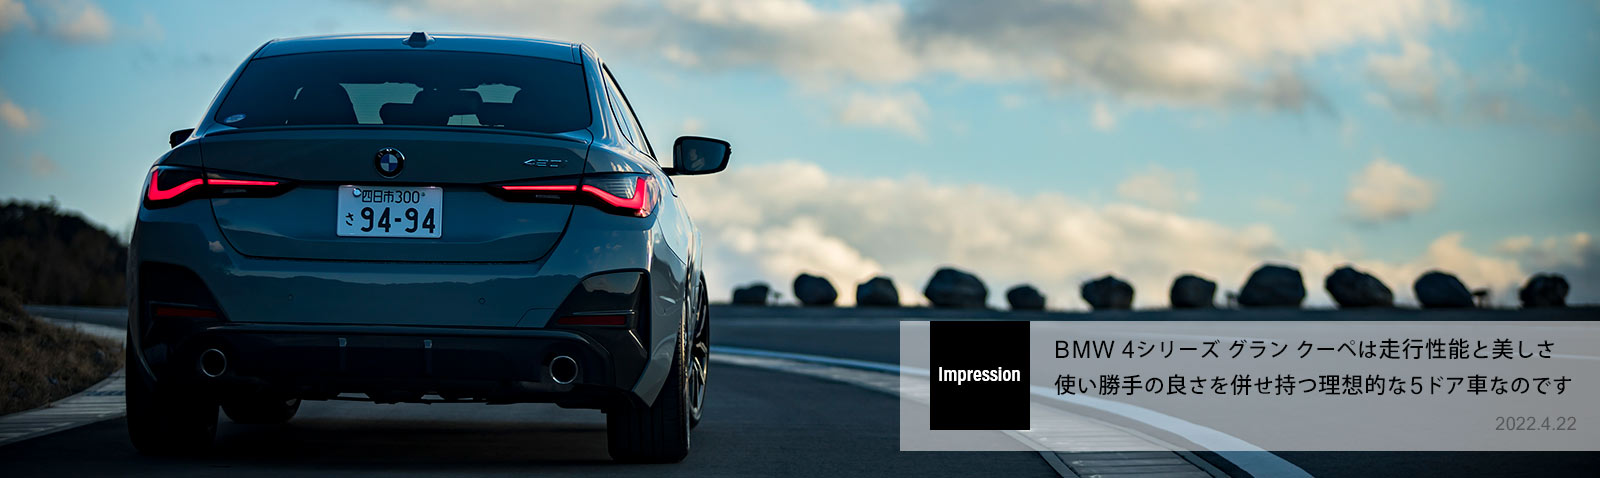 BMW 4シリーズ グラン クーペは走行性能と美しさ 使い勝手の良さを併せ持つ理想的な5ドア車なのです